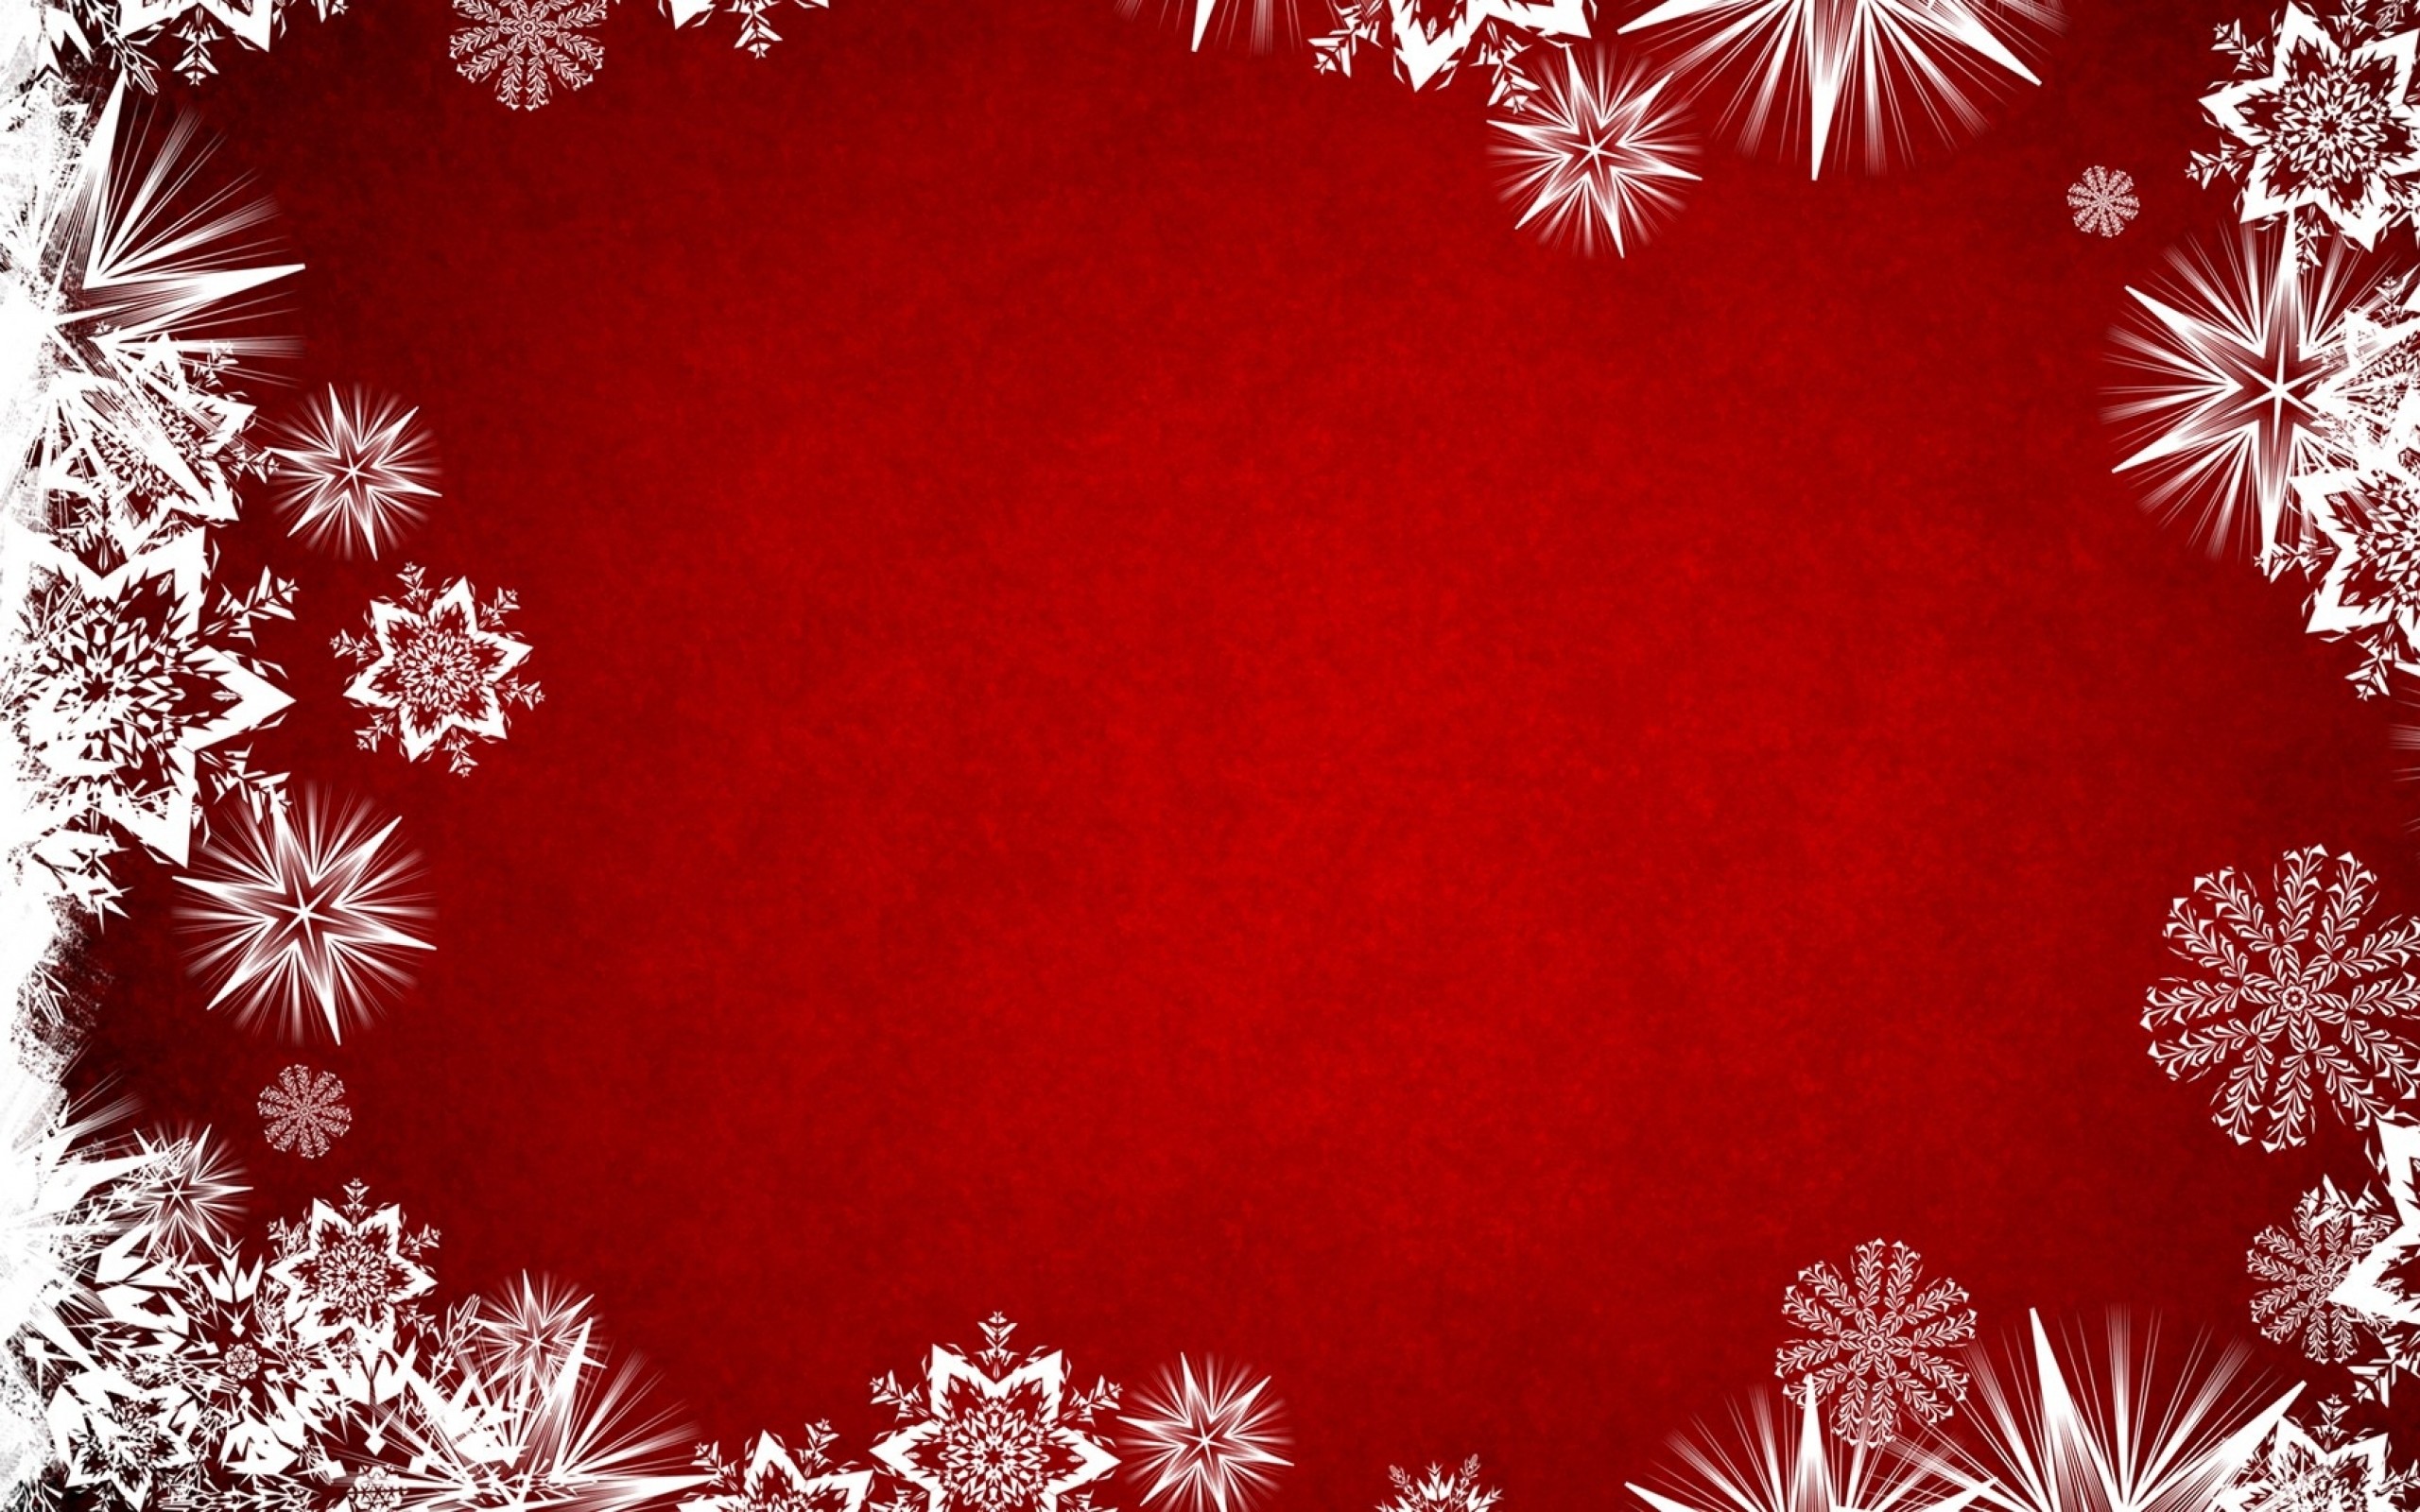 Happy Holidays Background Image